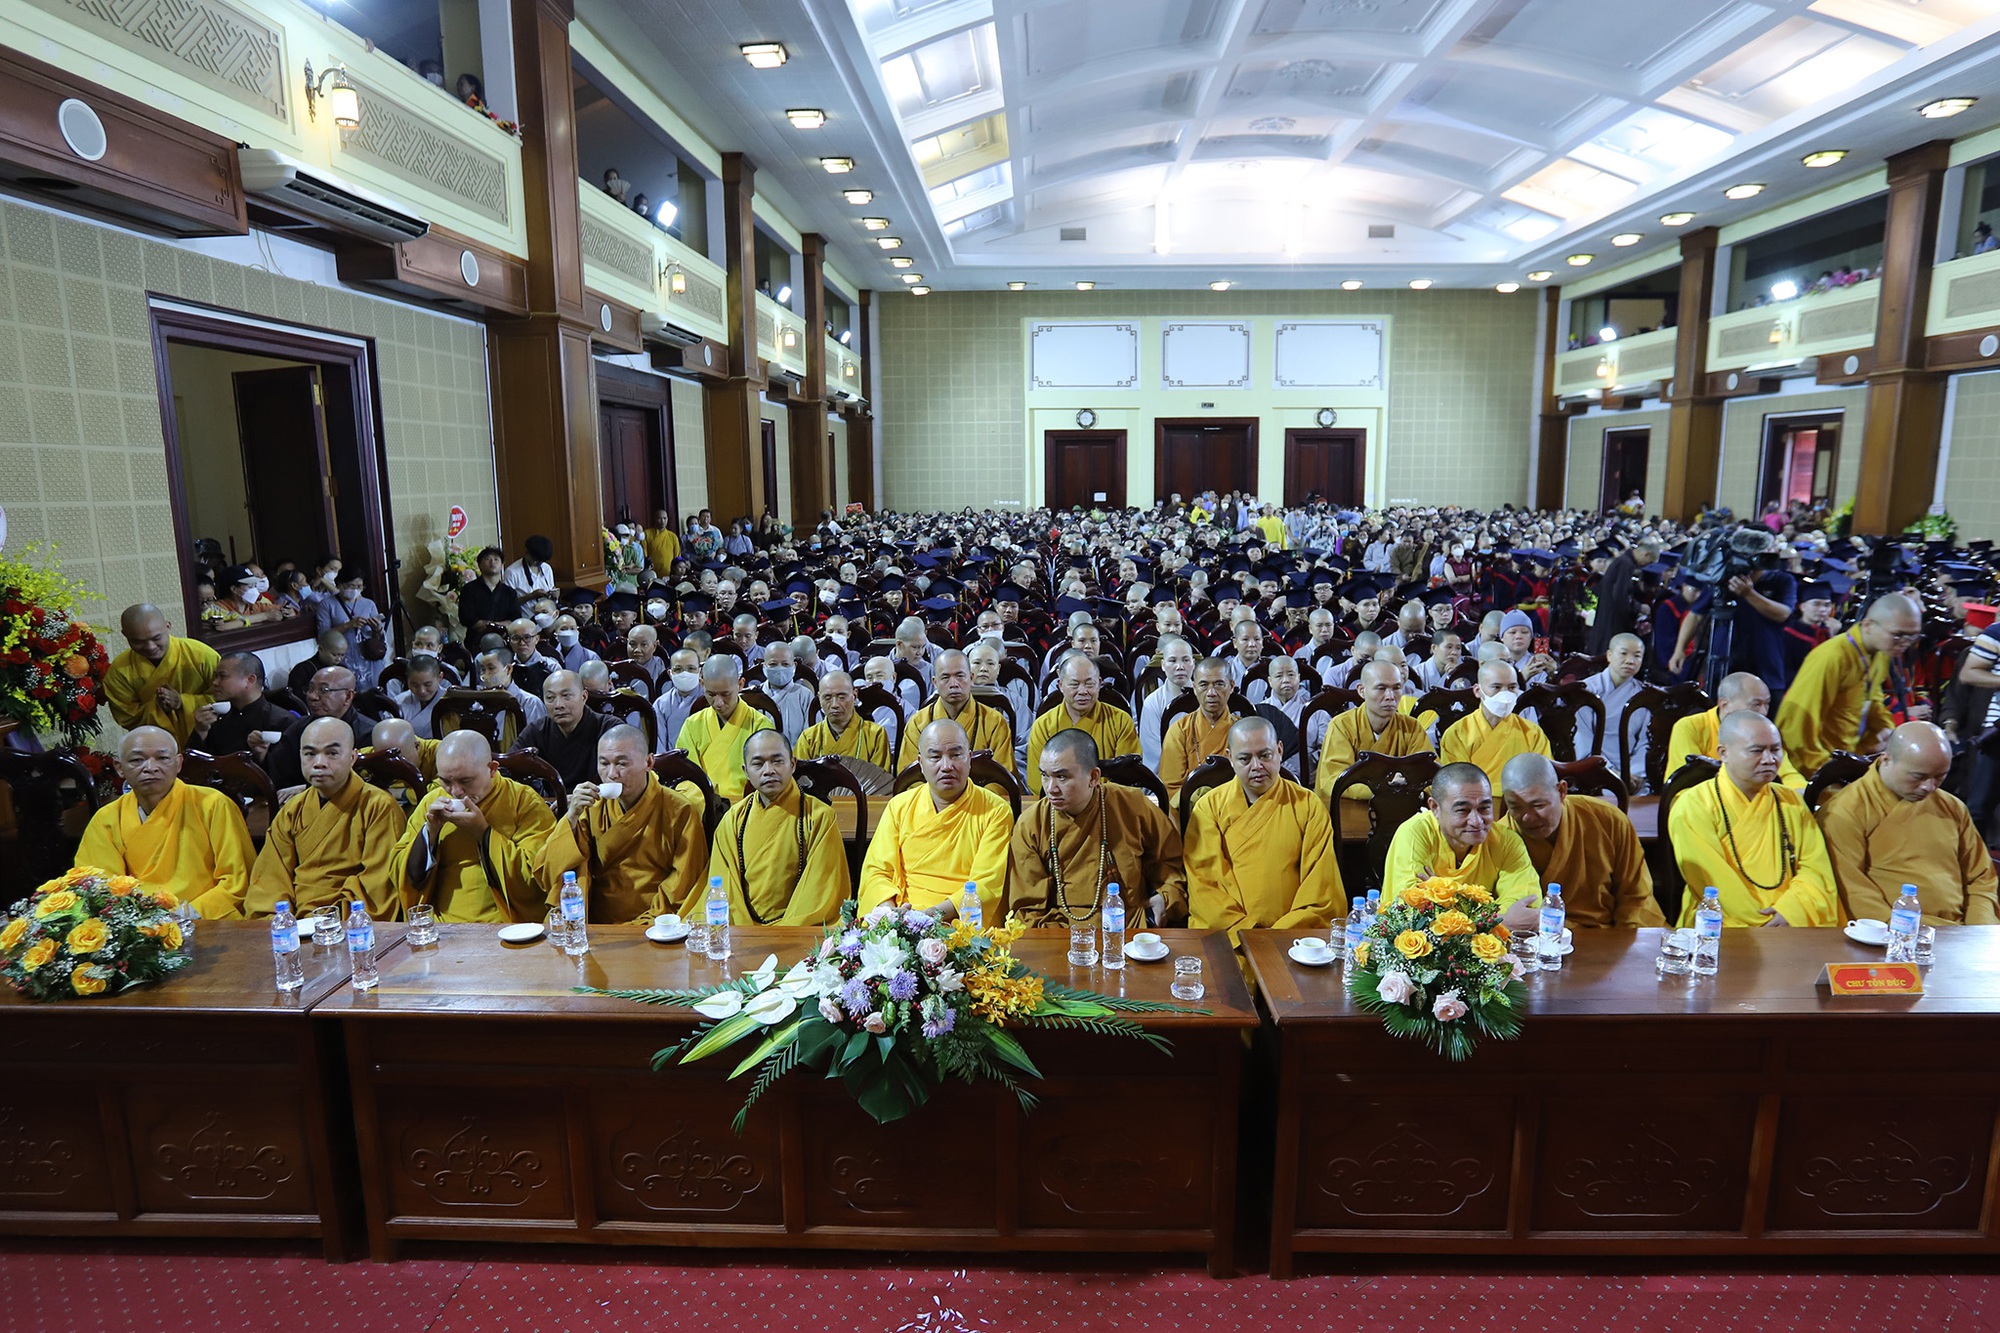 Lễ khai giảng đặc biệt tại ngôi trường có nhiều nhà sư theo học nhất Việt Nam - Ảnh 3.